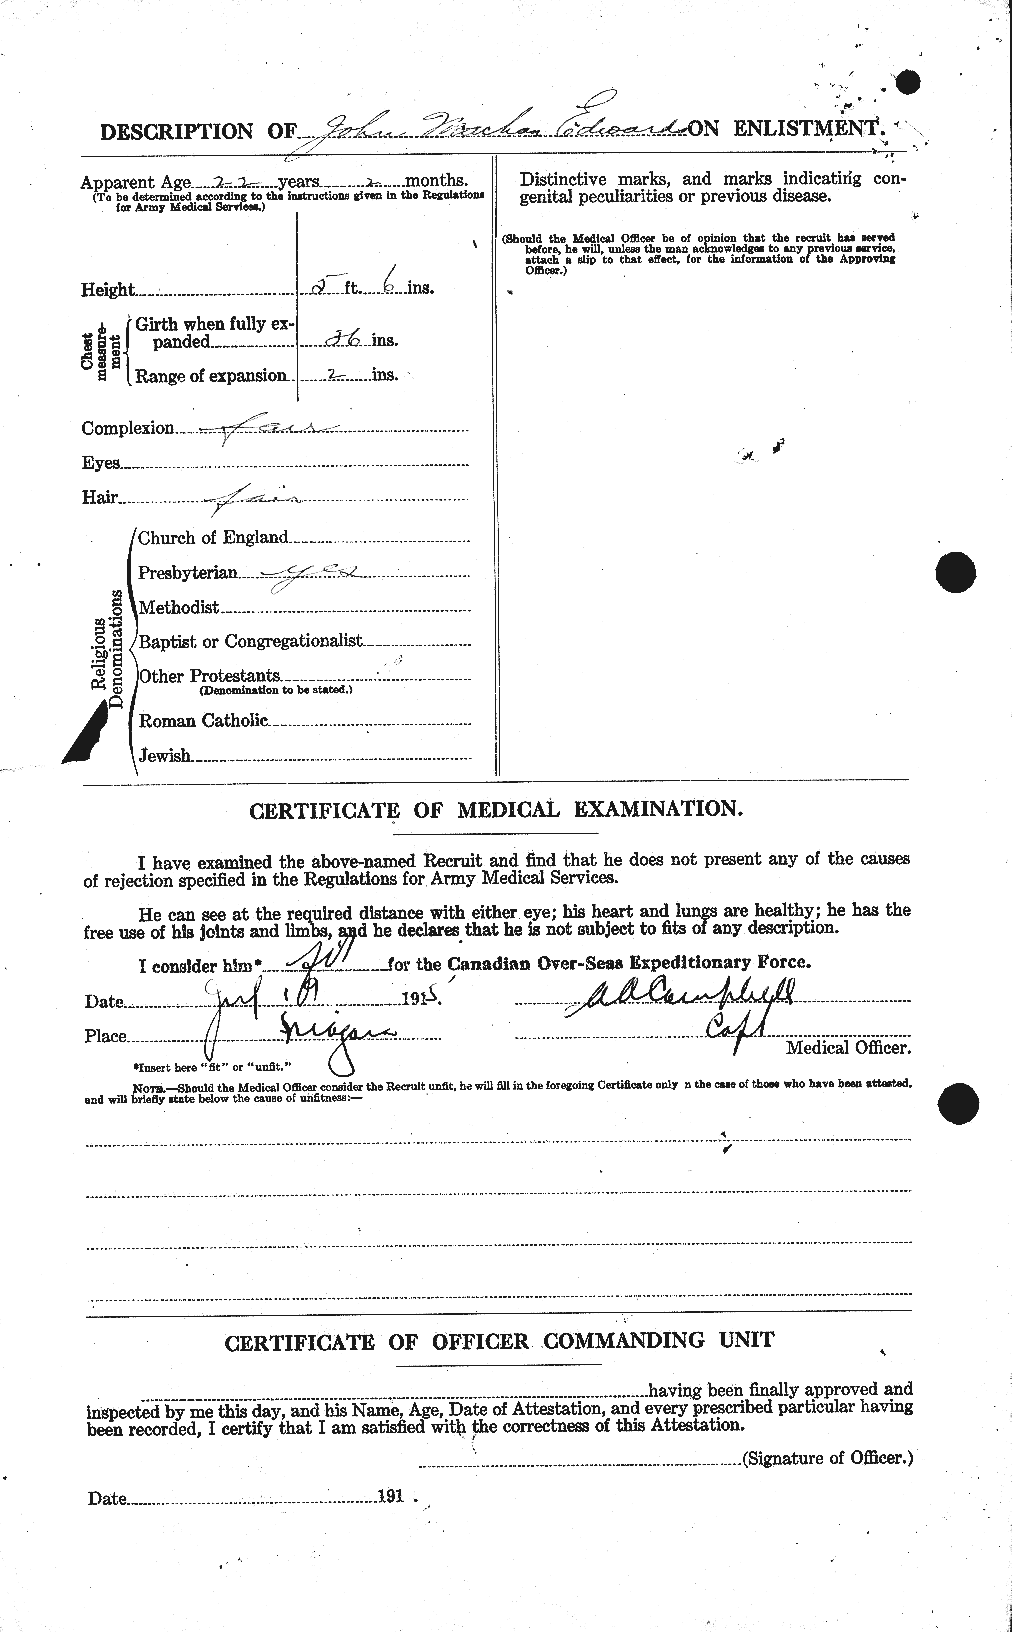 Dossiers du Personnel de la Première Guerre mondiale - CEC 310149b